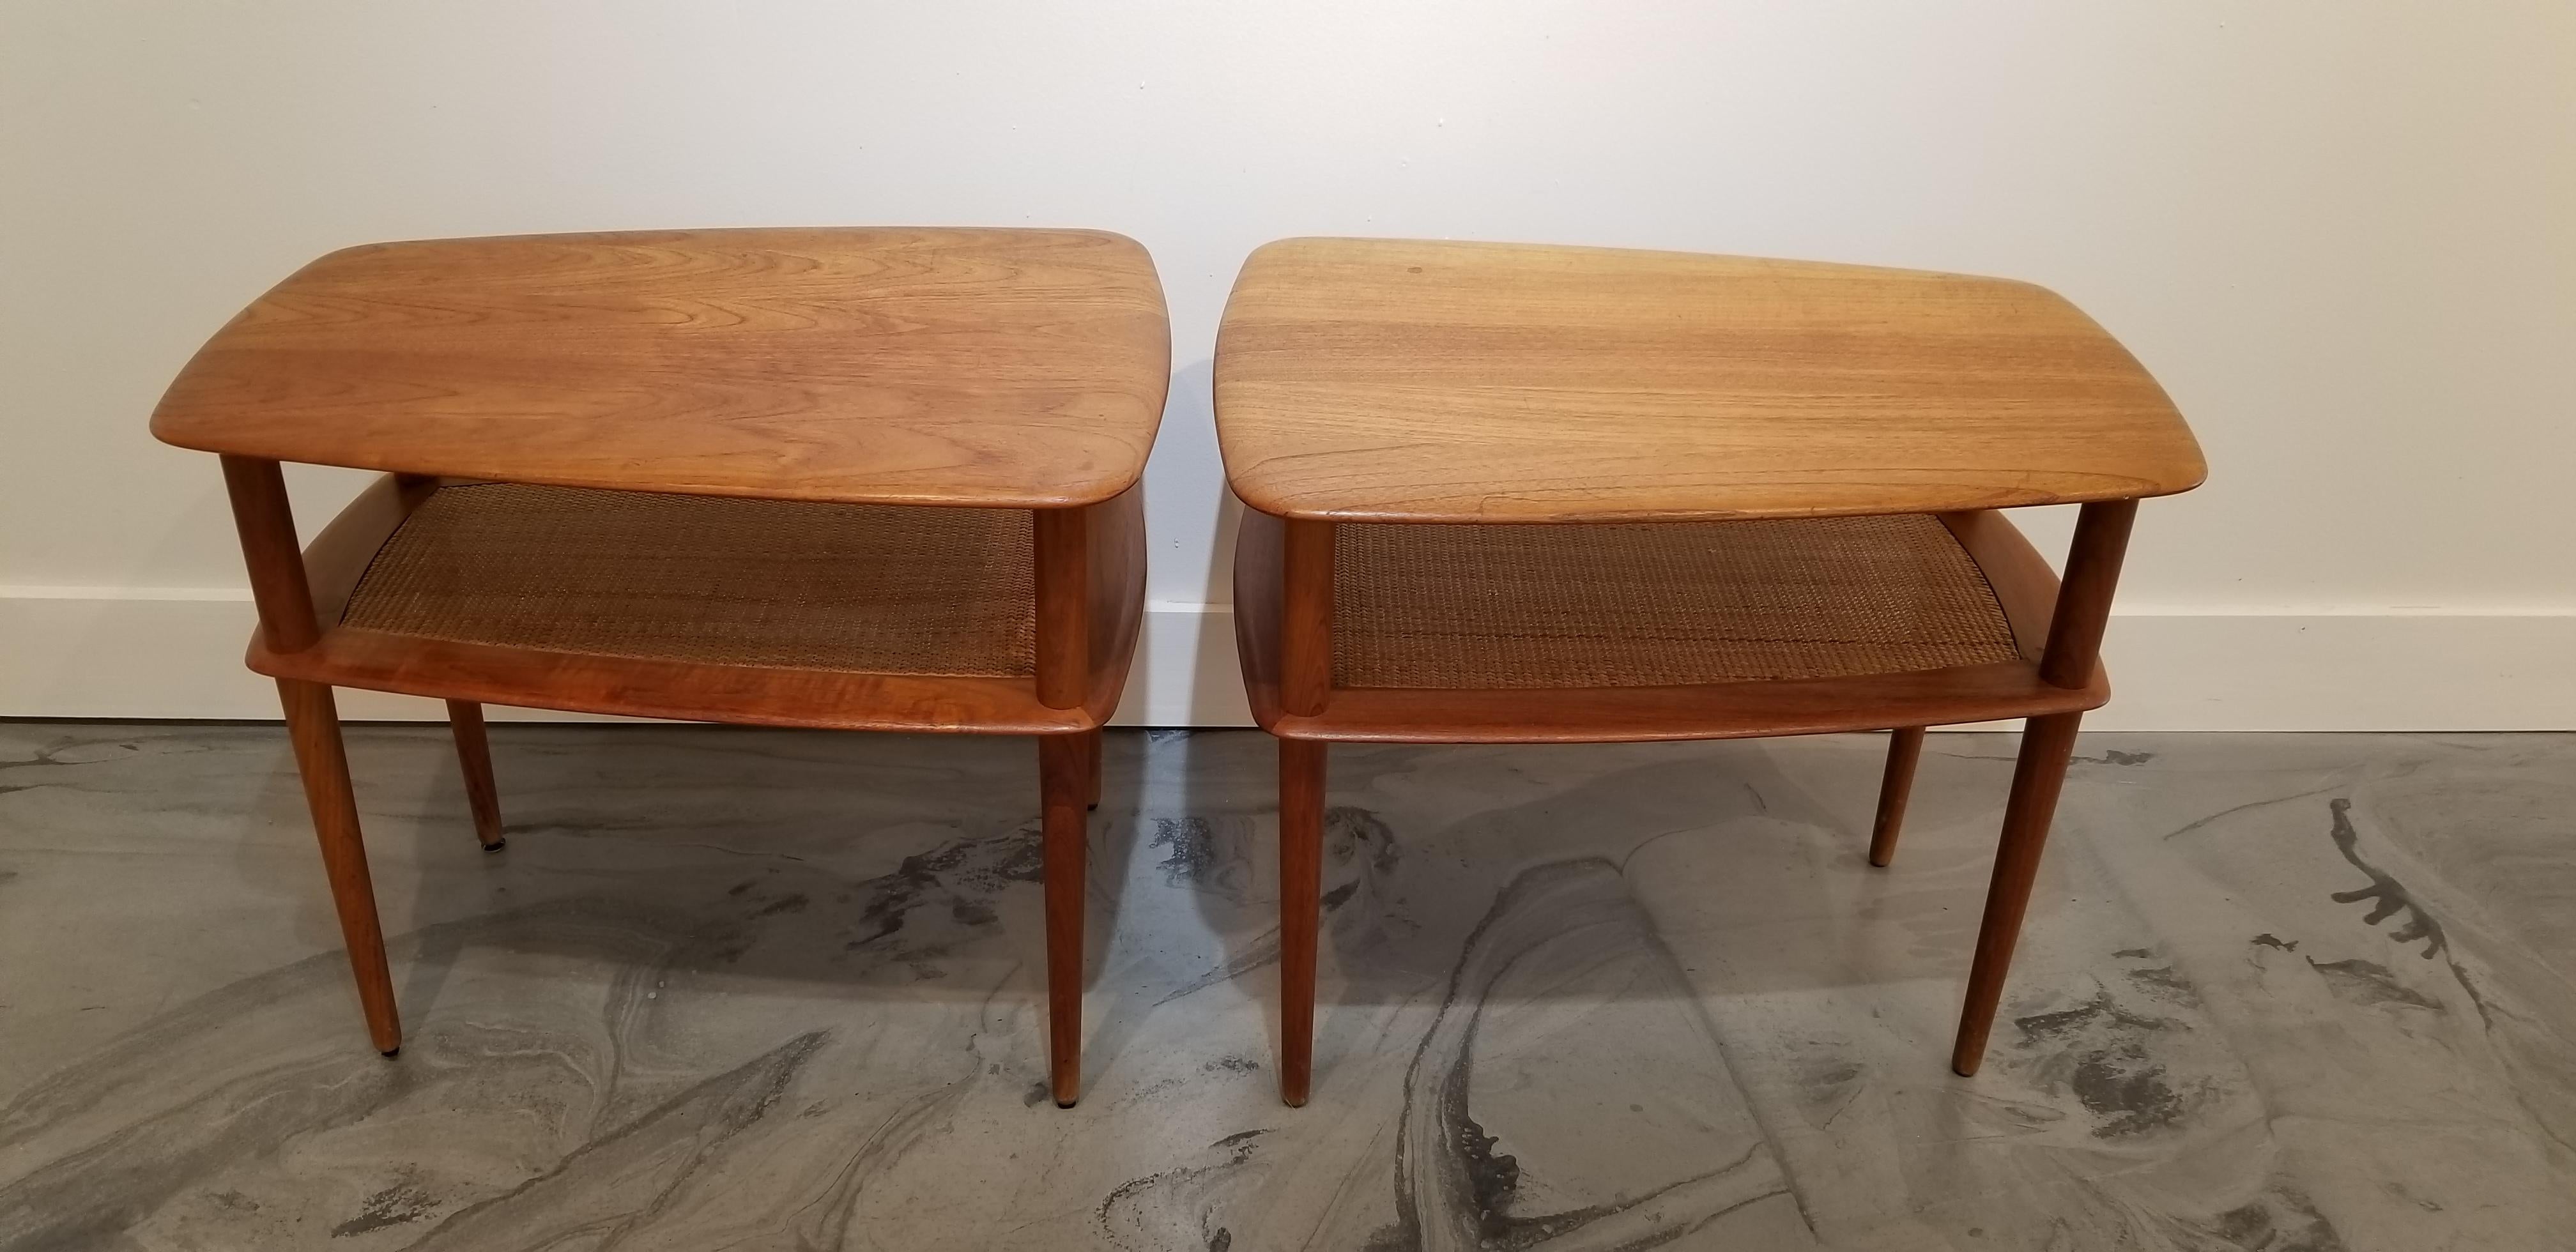 Cane Peter Hvidt Teak Danish Modern End Tables, A Pair For Sale